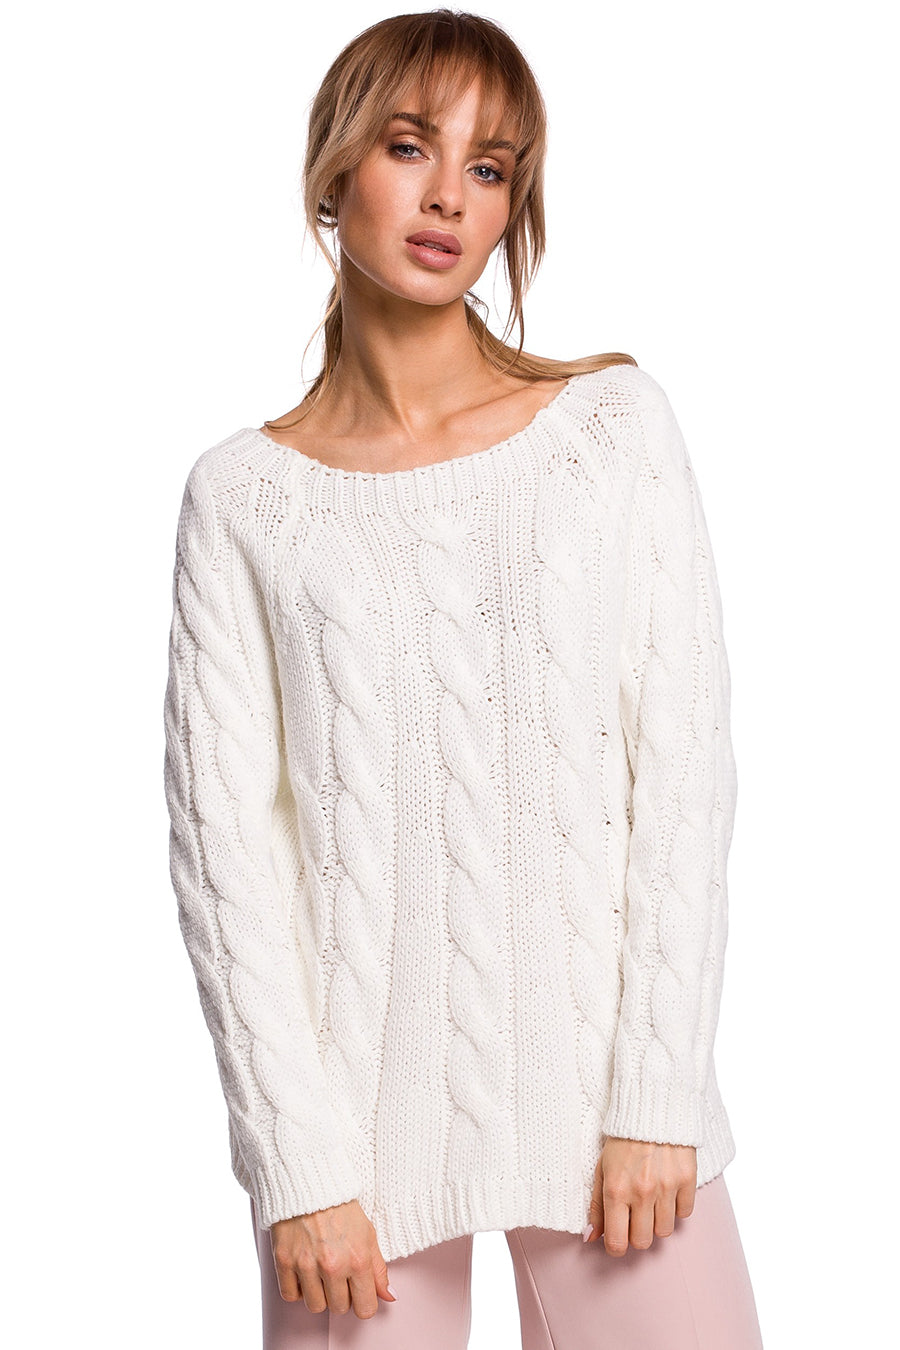 Дамски пуловер Kendria, Бял 3